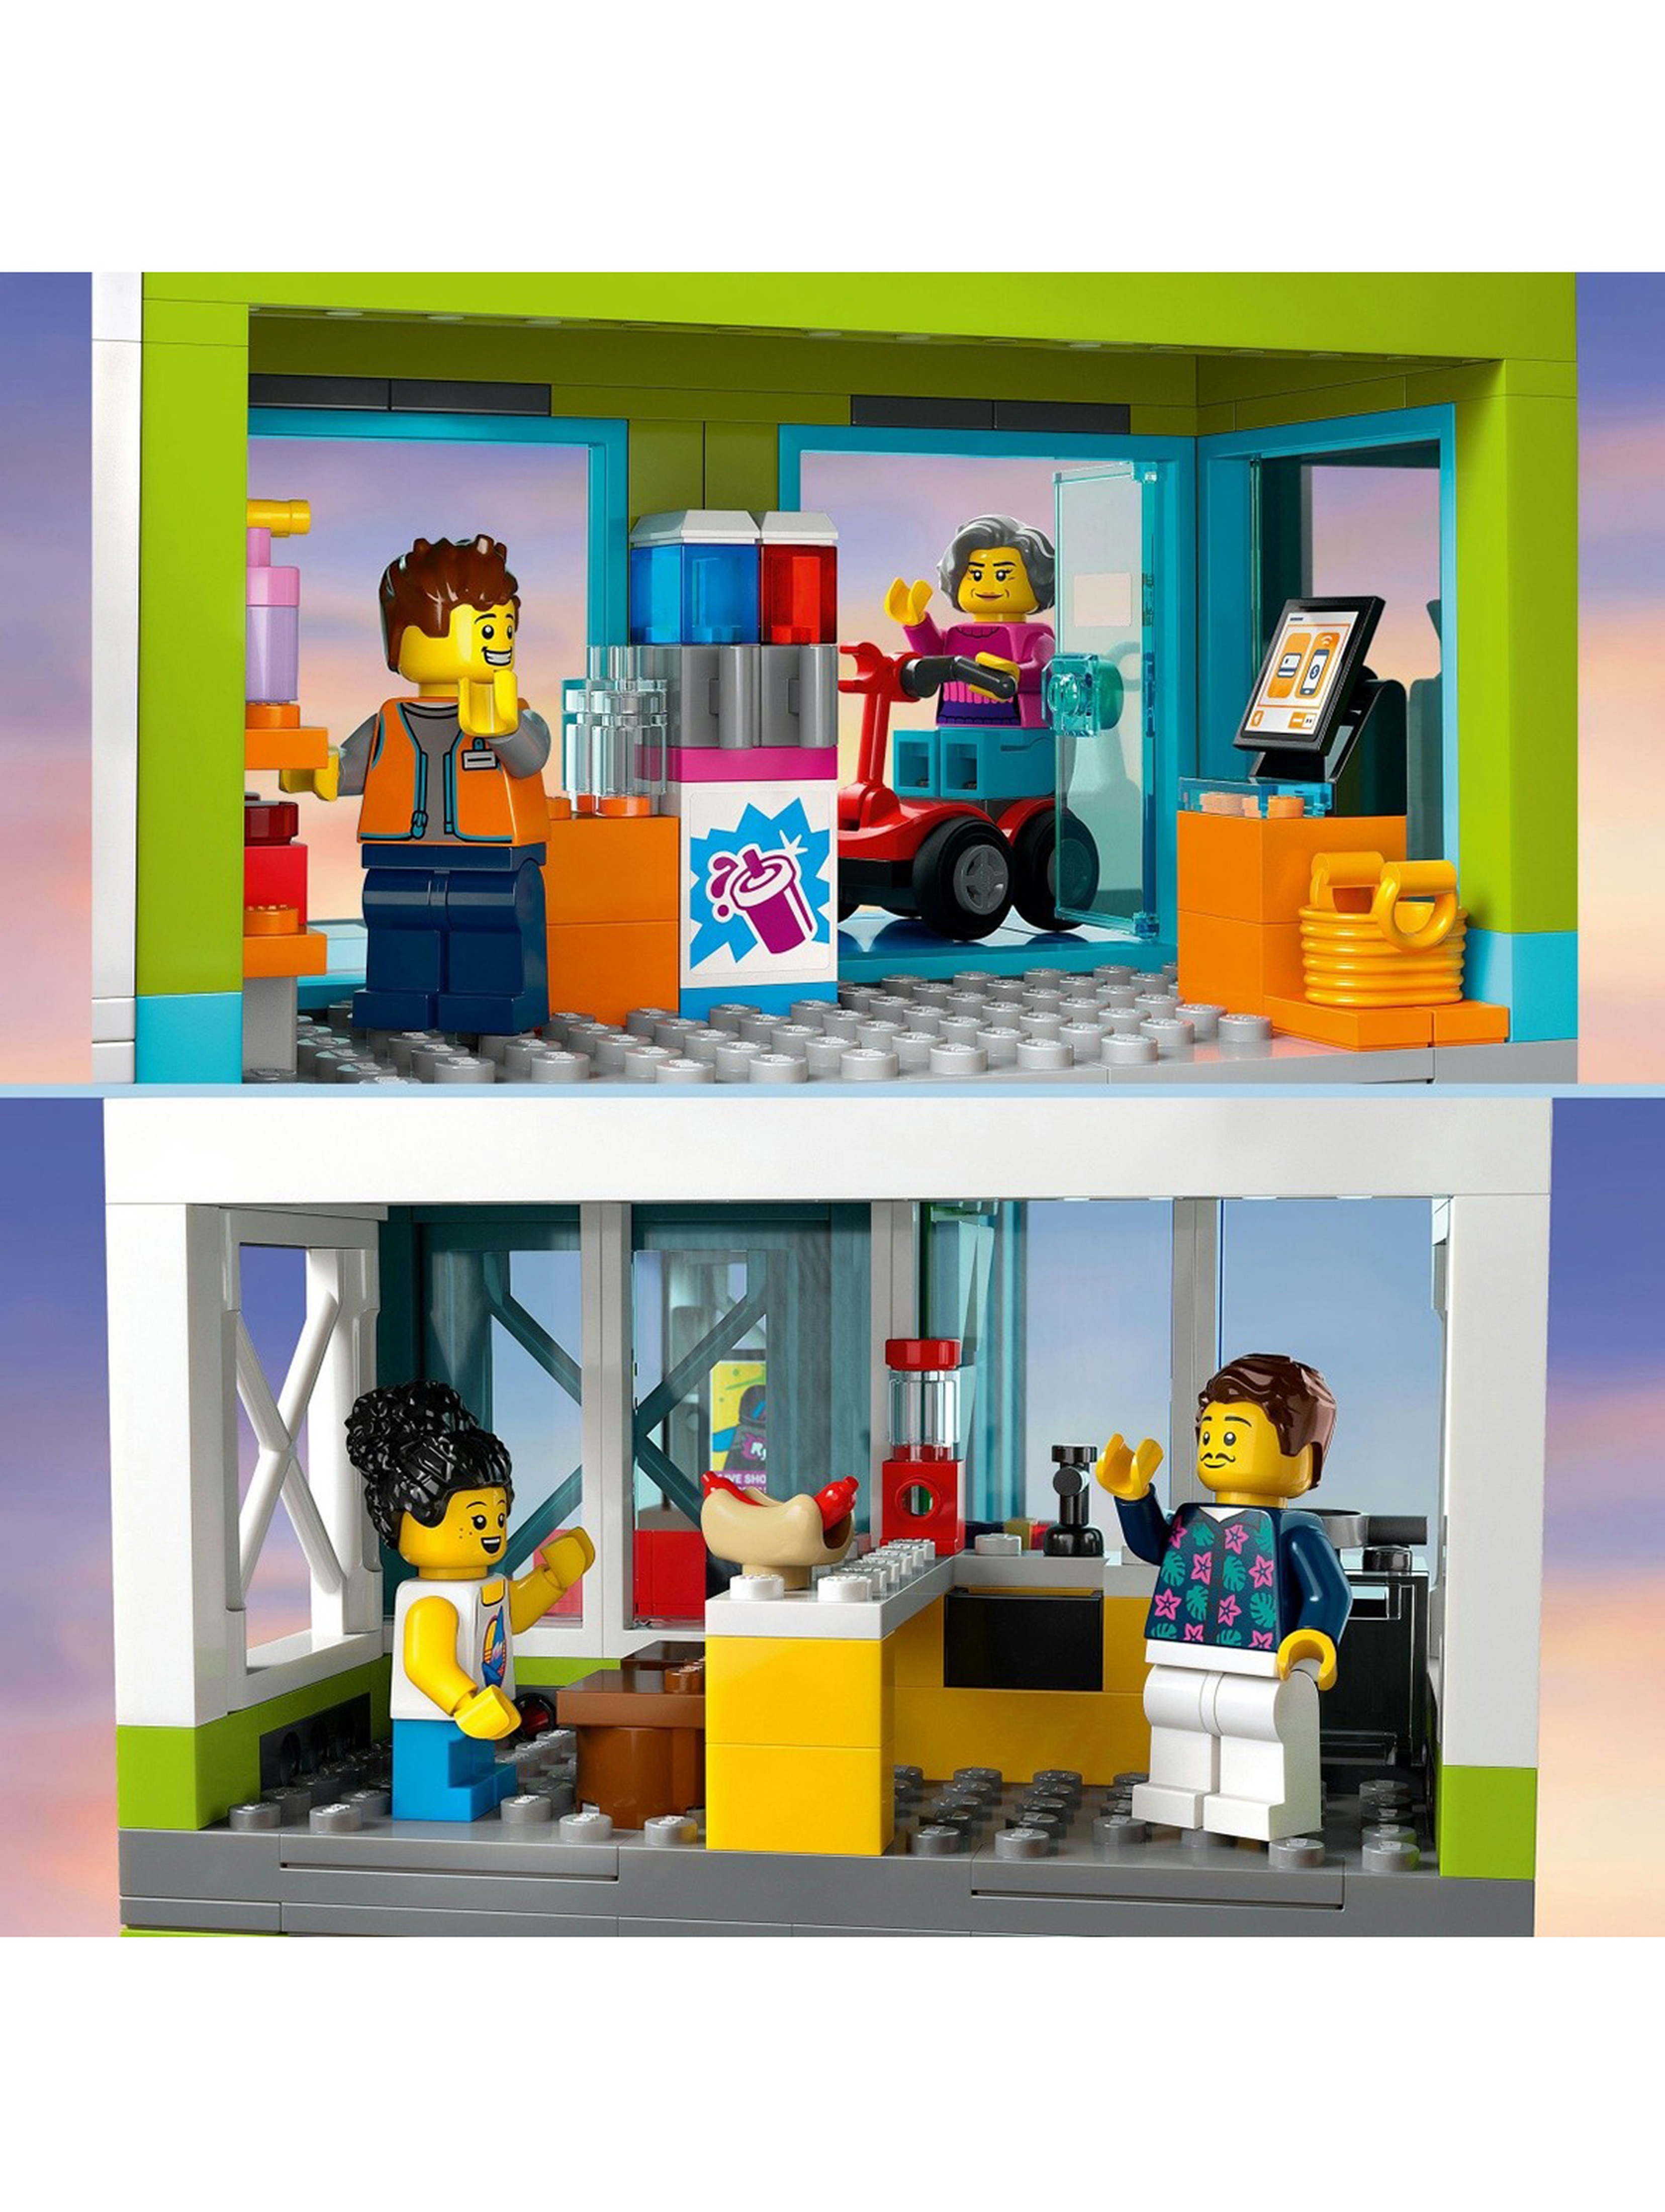 Klocki LEGO City 60365 Apartamentowiec - 688 elementów, wiek 6 +